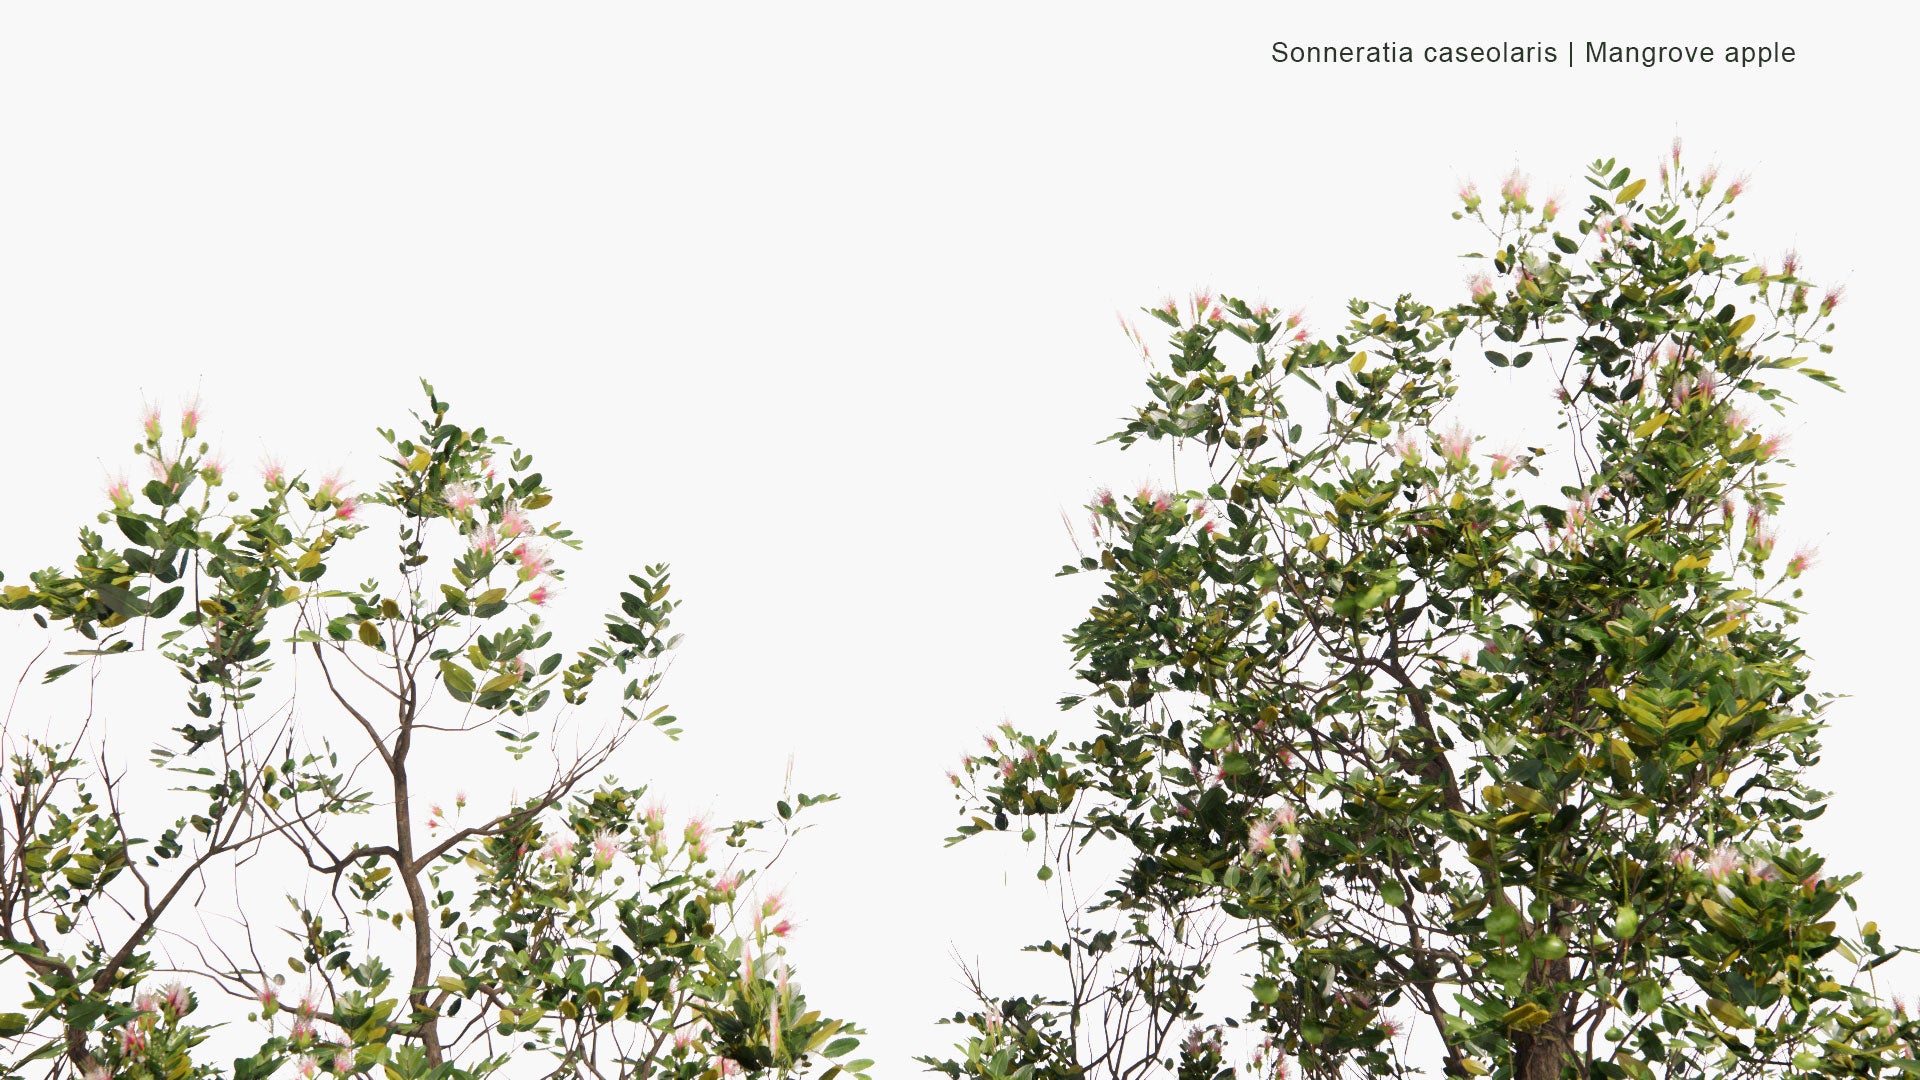 Low Poly Sonneratia Caseolaris - Mangrove Apple (3D Model)